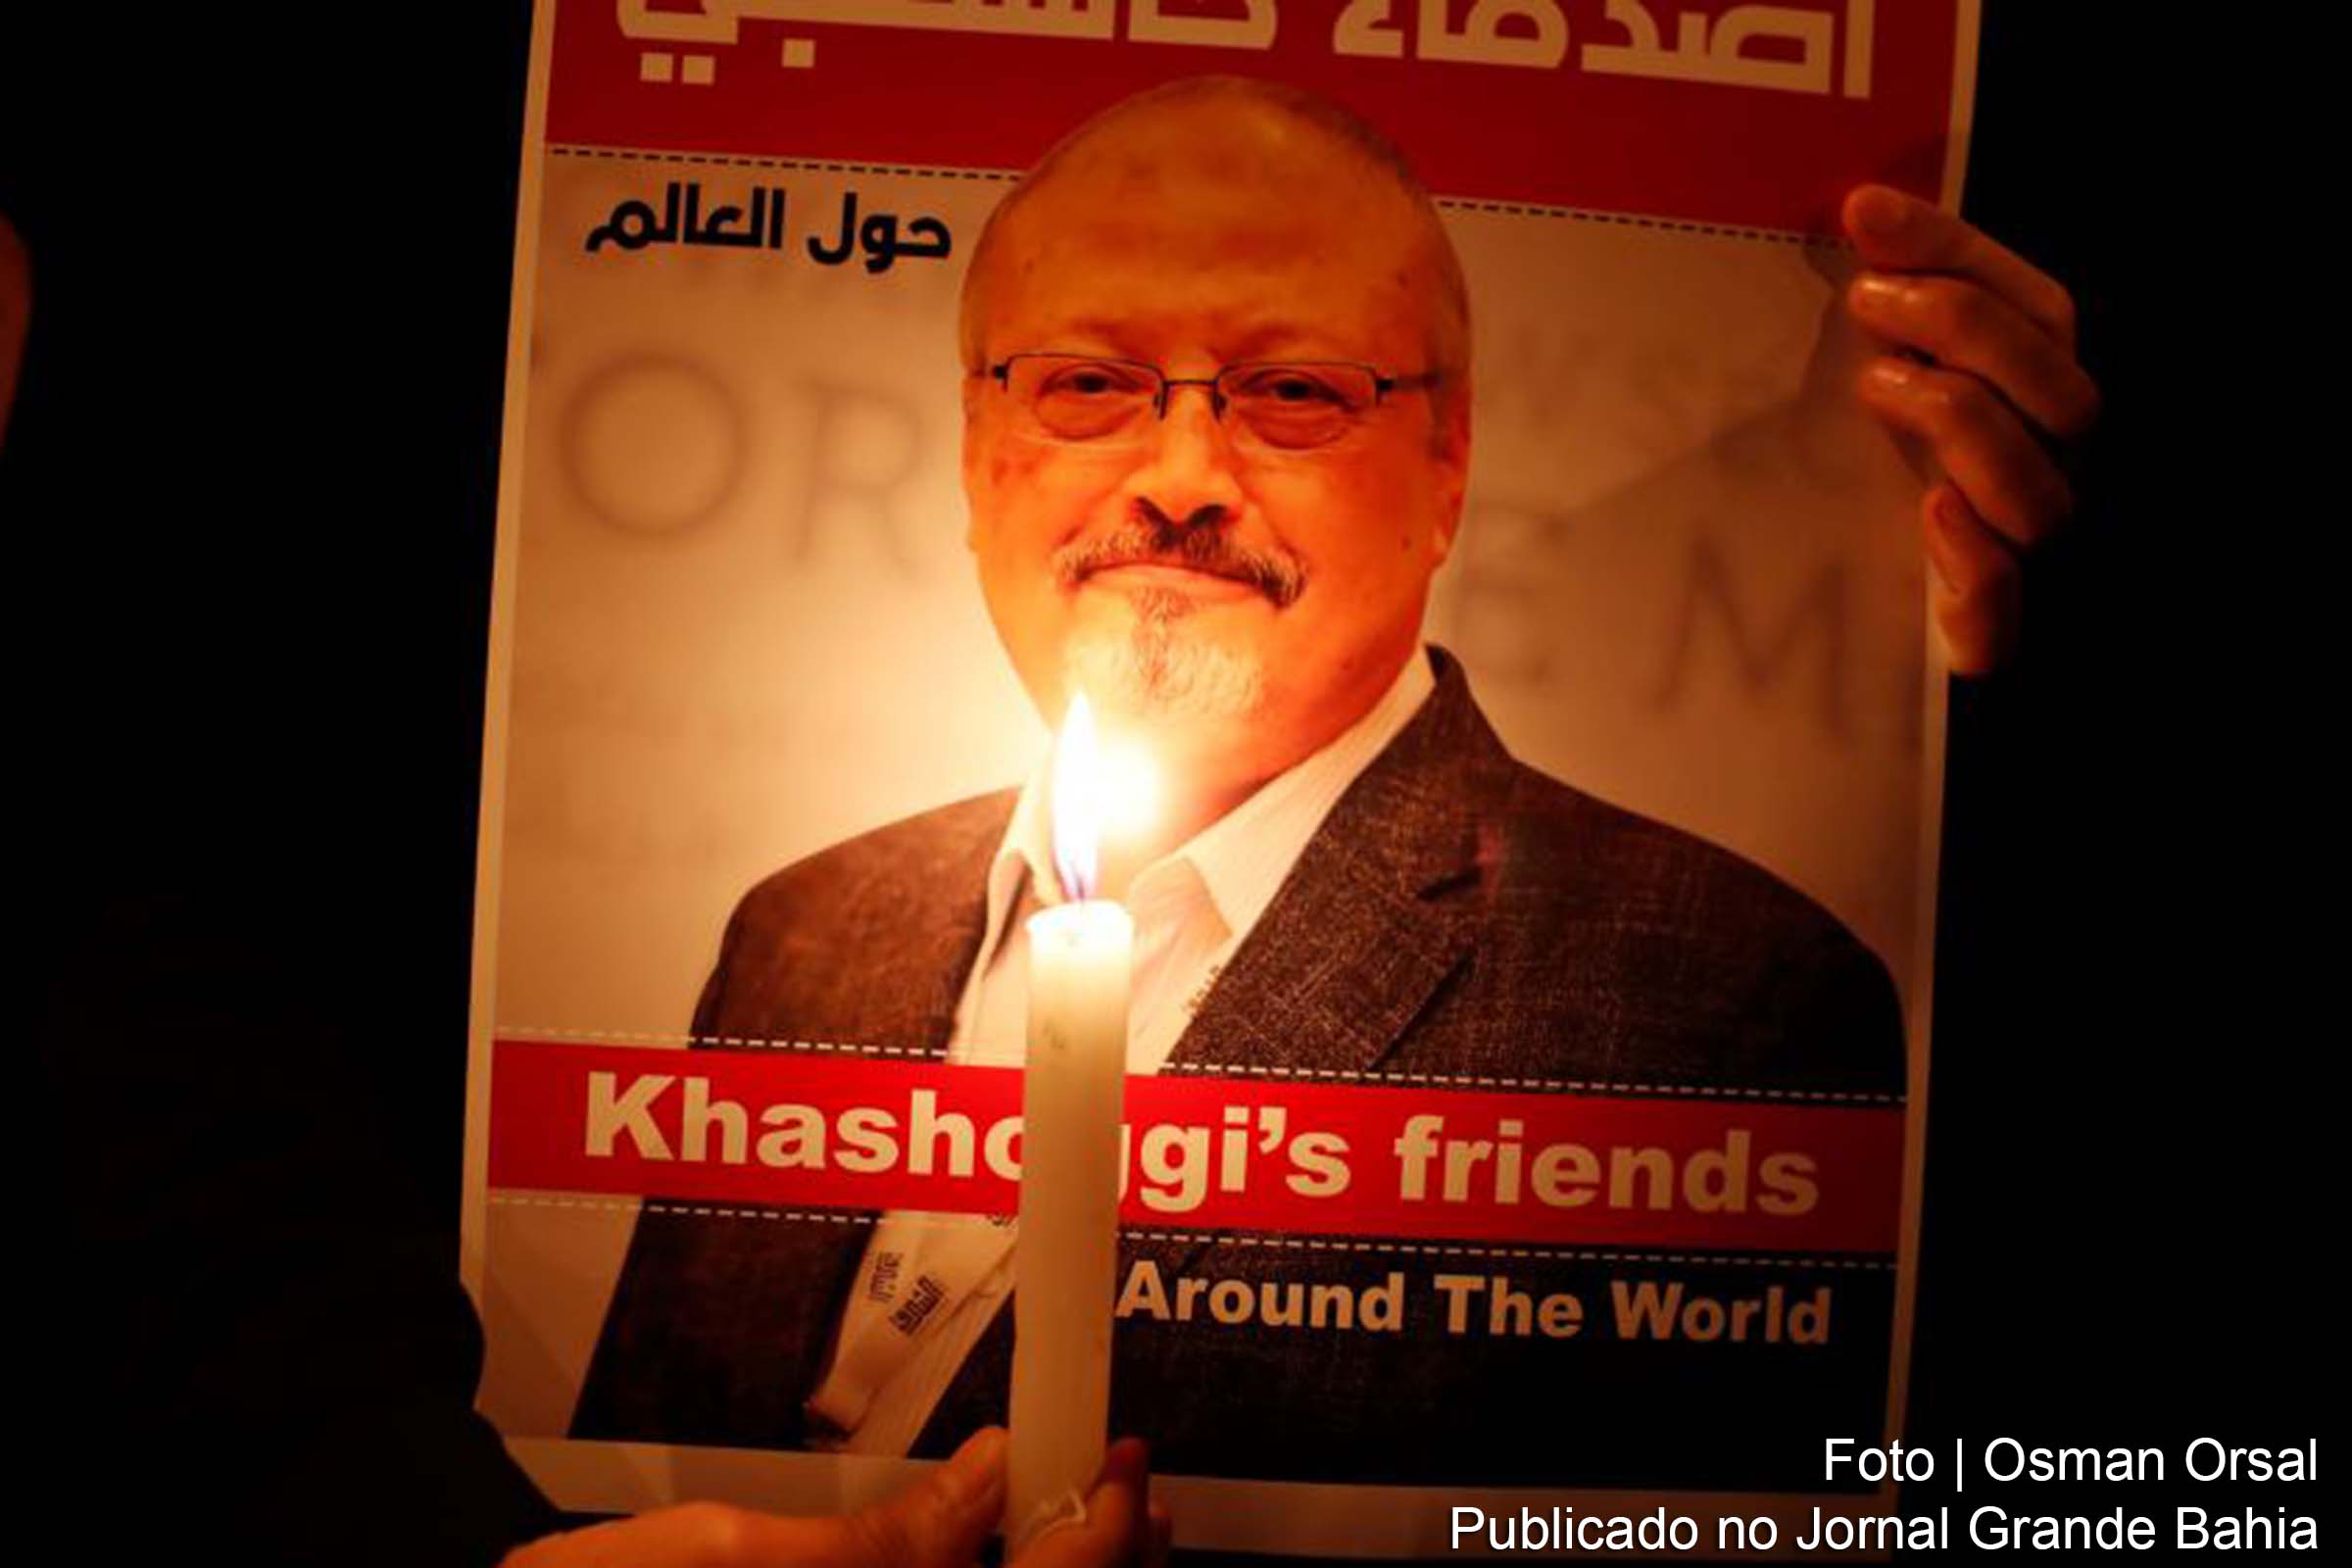 Jamal Ahmad Khashoggi foi um jornalista saudita, autor e ex-gerente geral e editor-chefe da Al-Arab News Channel. Ele também serviu como editor do jornal saudita Al Watan, transformando-o em uma plataforma para os progressistas da Arábia Saudita.